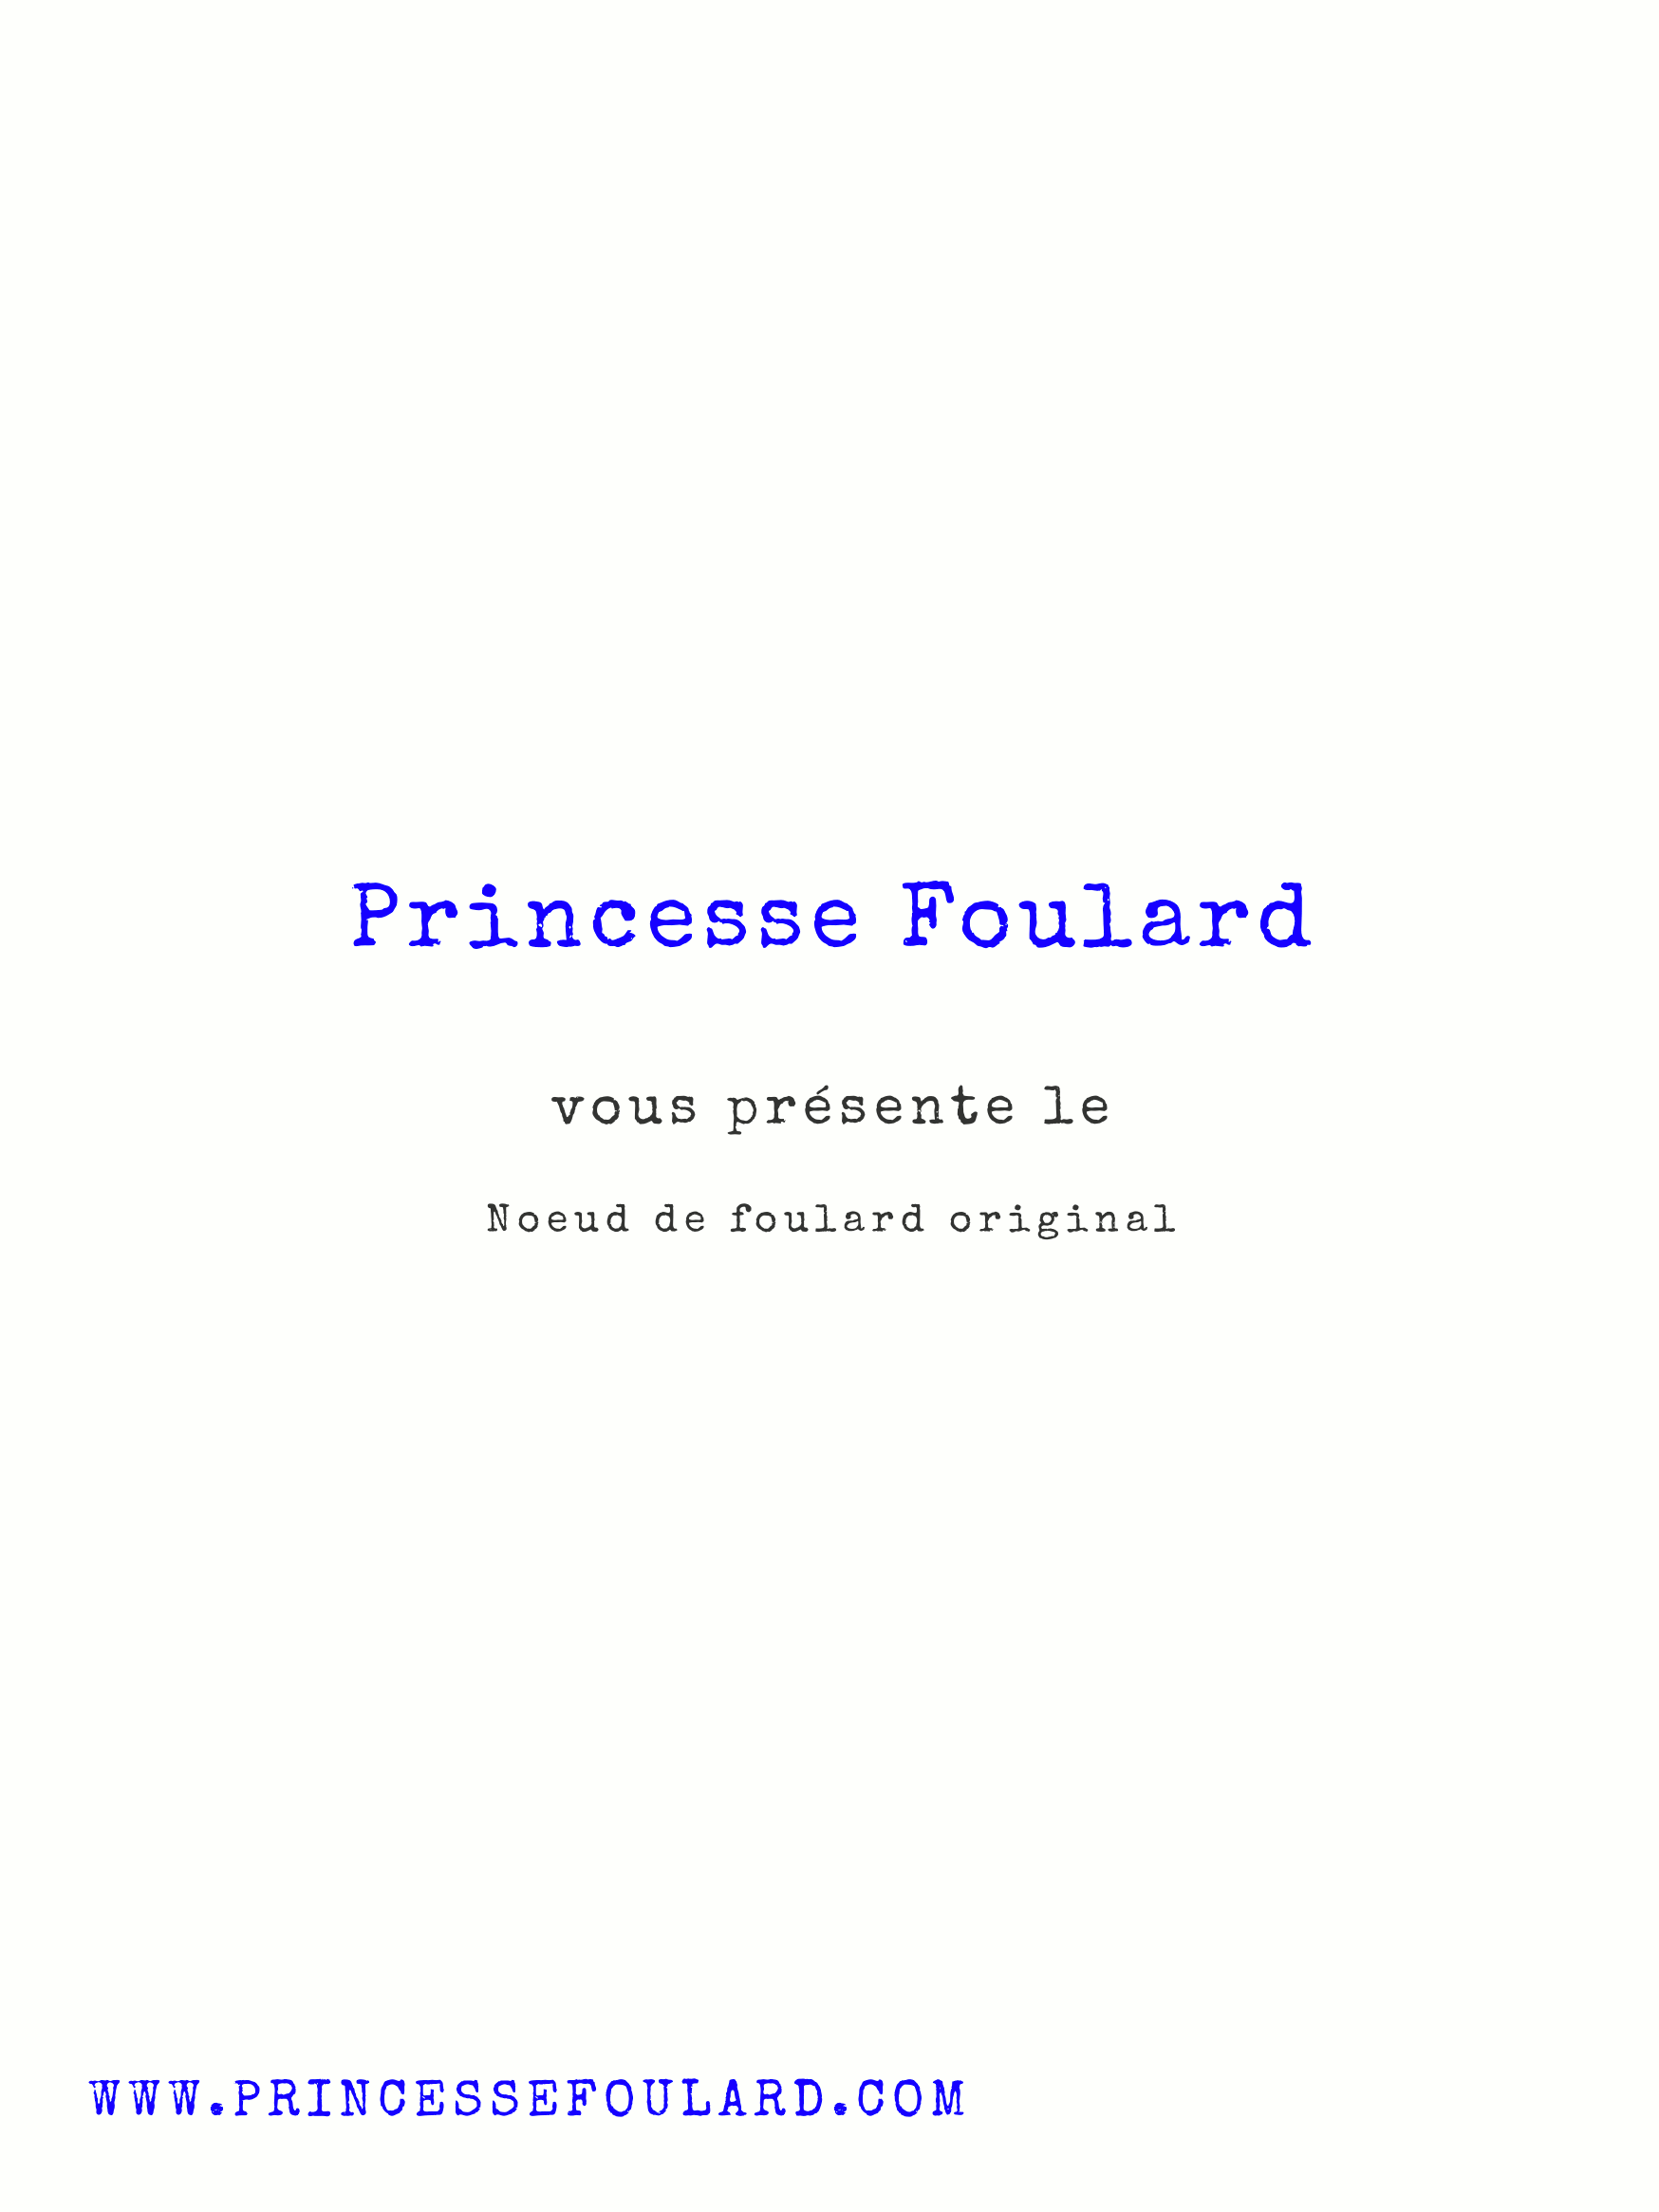 Tuto Noeud de Foulard original par "Princesse Foulard"